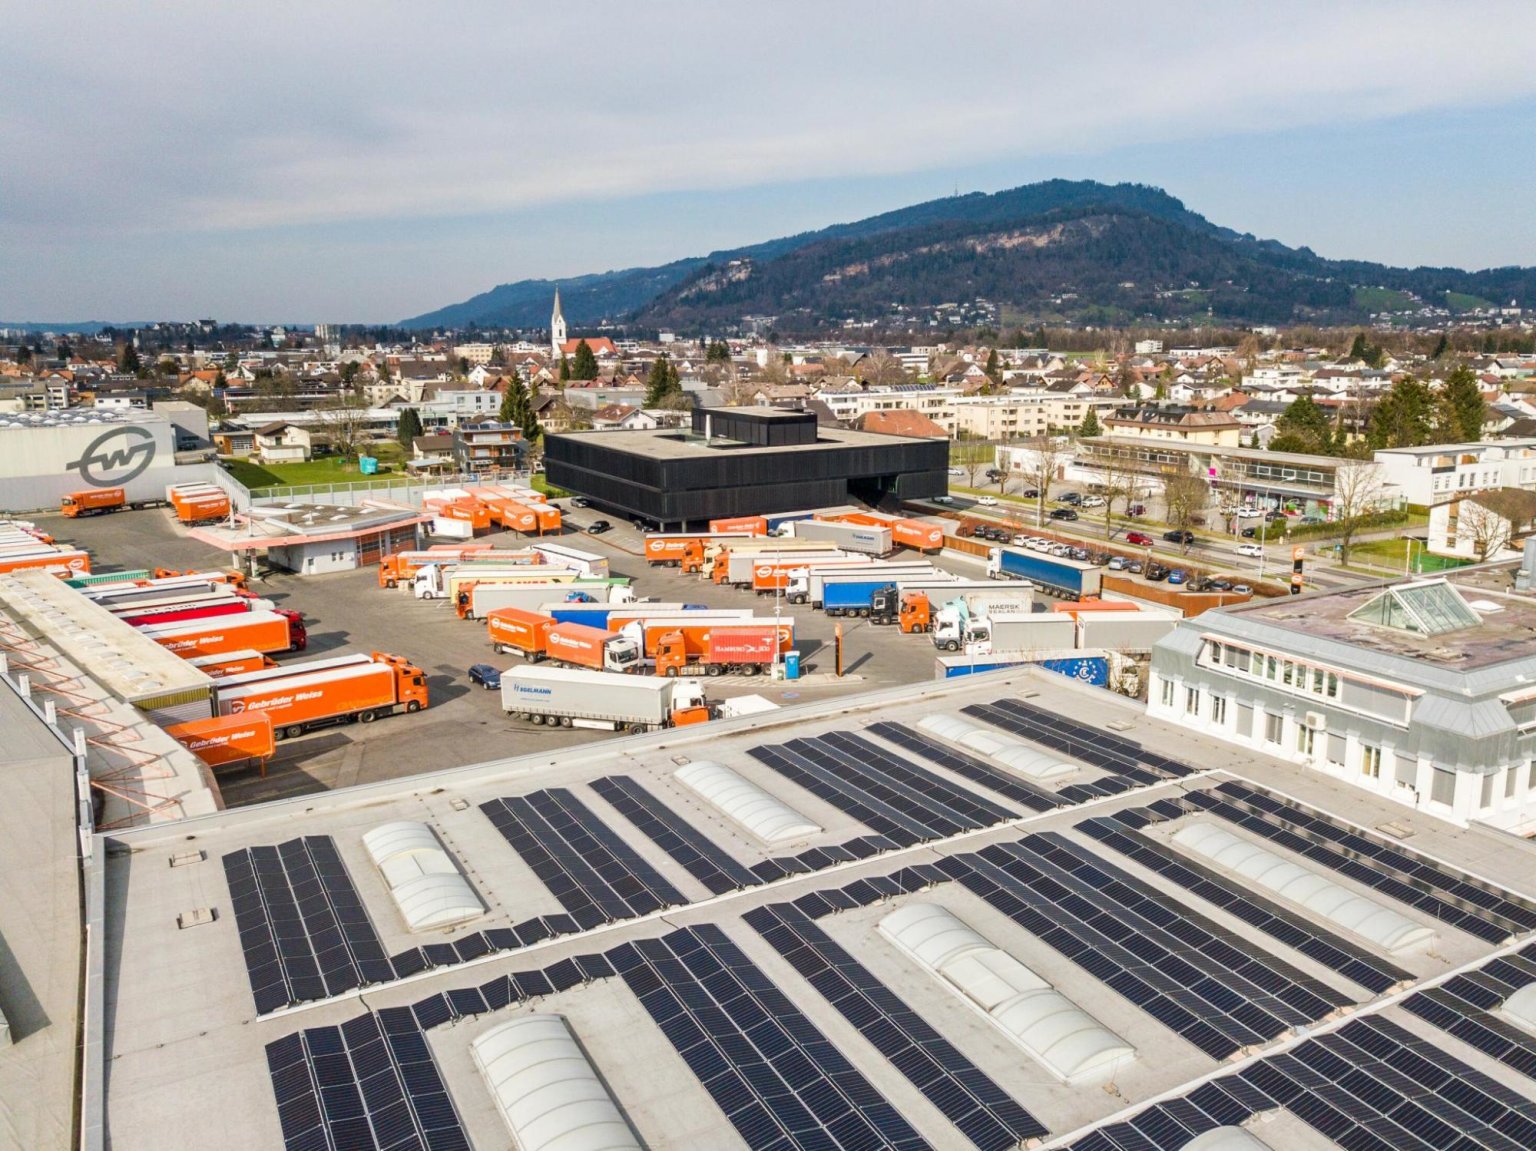 Do roku 2030 chce spoleènost Gebrüder Weiss dosáhnout na všech svých poboèkách uhlíkové neutrality. Na snímku fotovoltaická elektrárna v lokalitì Lauterach, v pozadí centrála firmy.